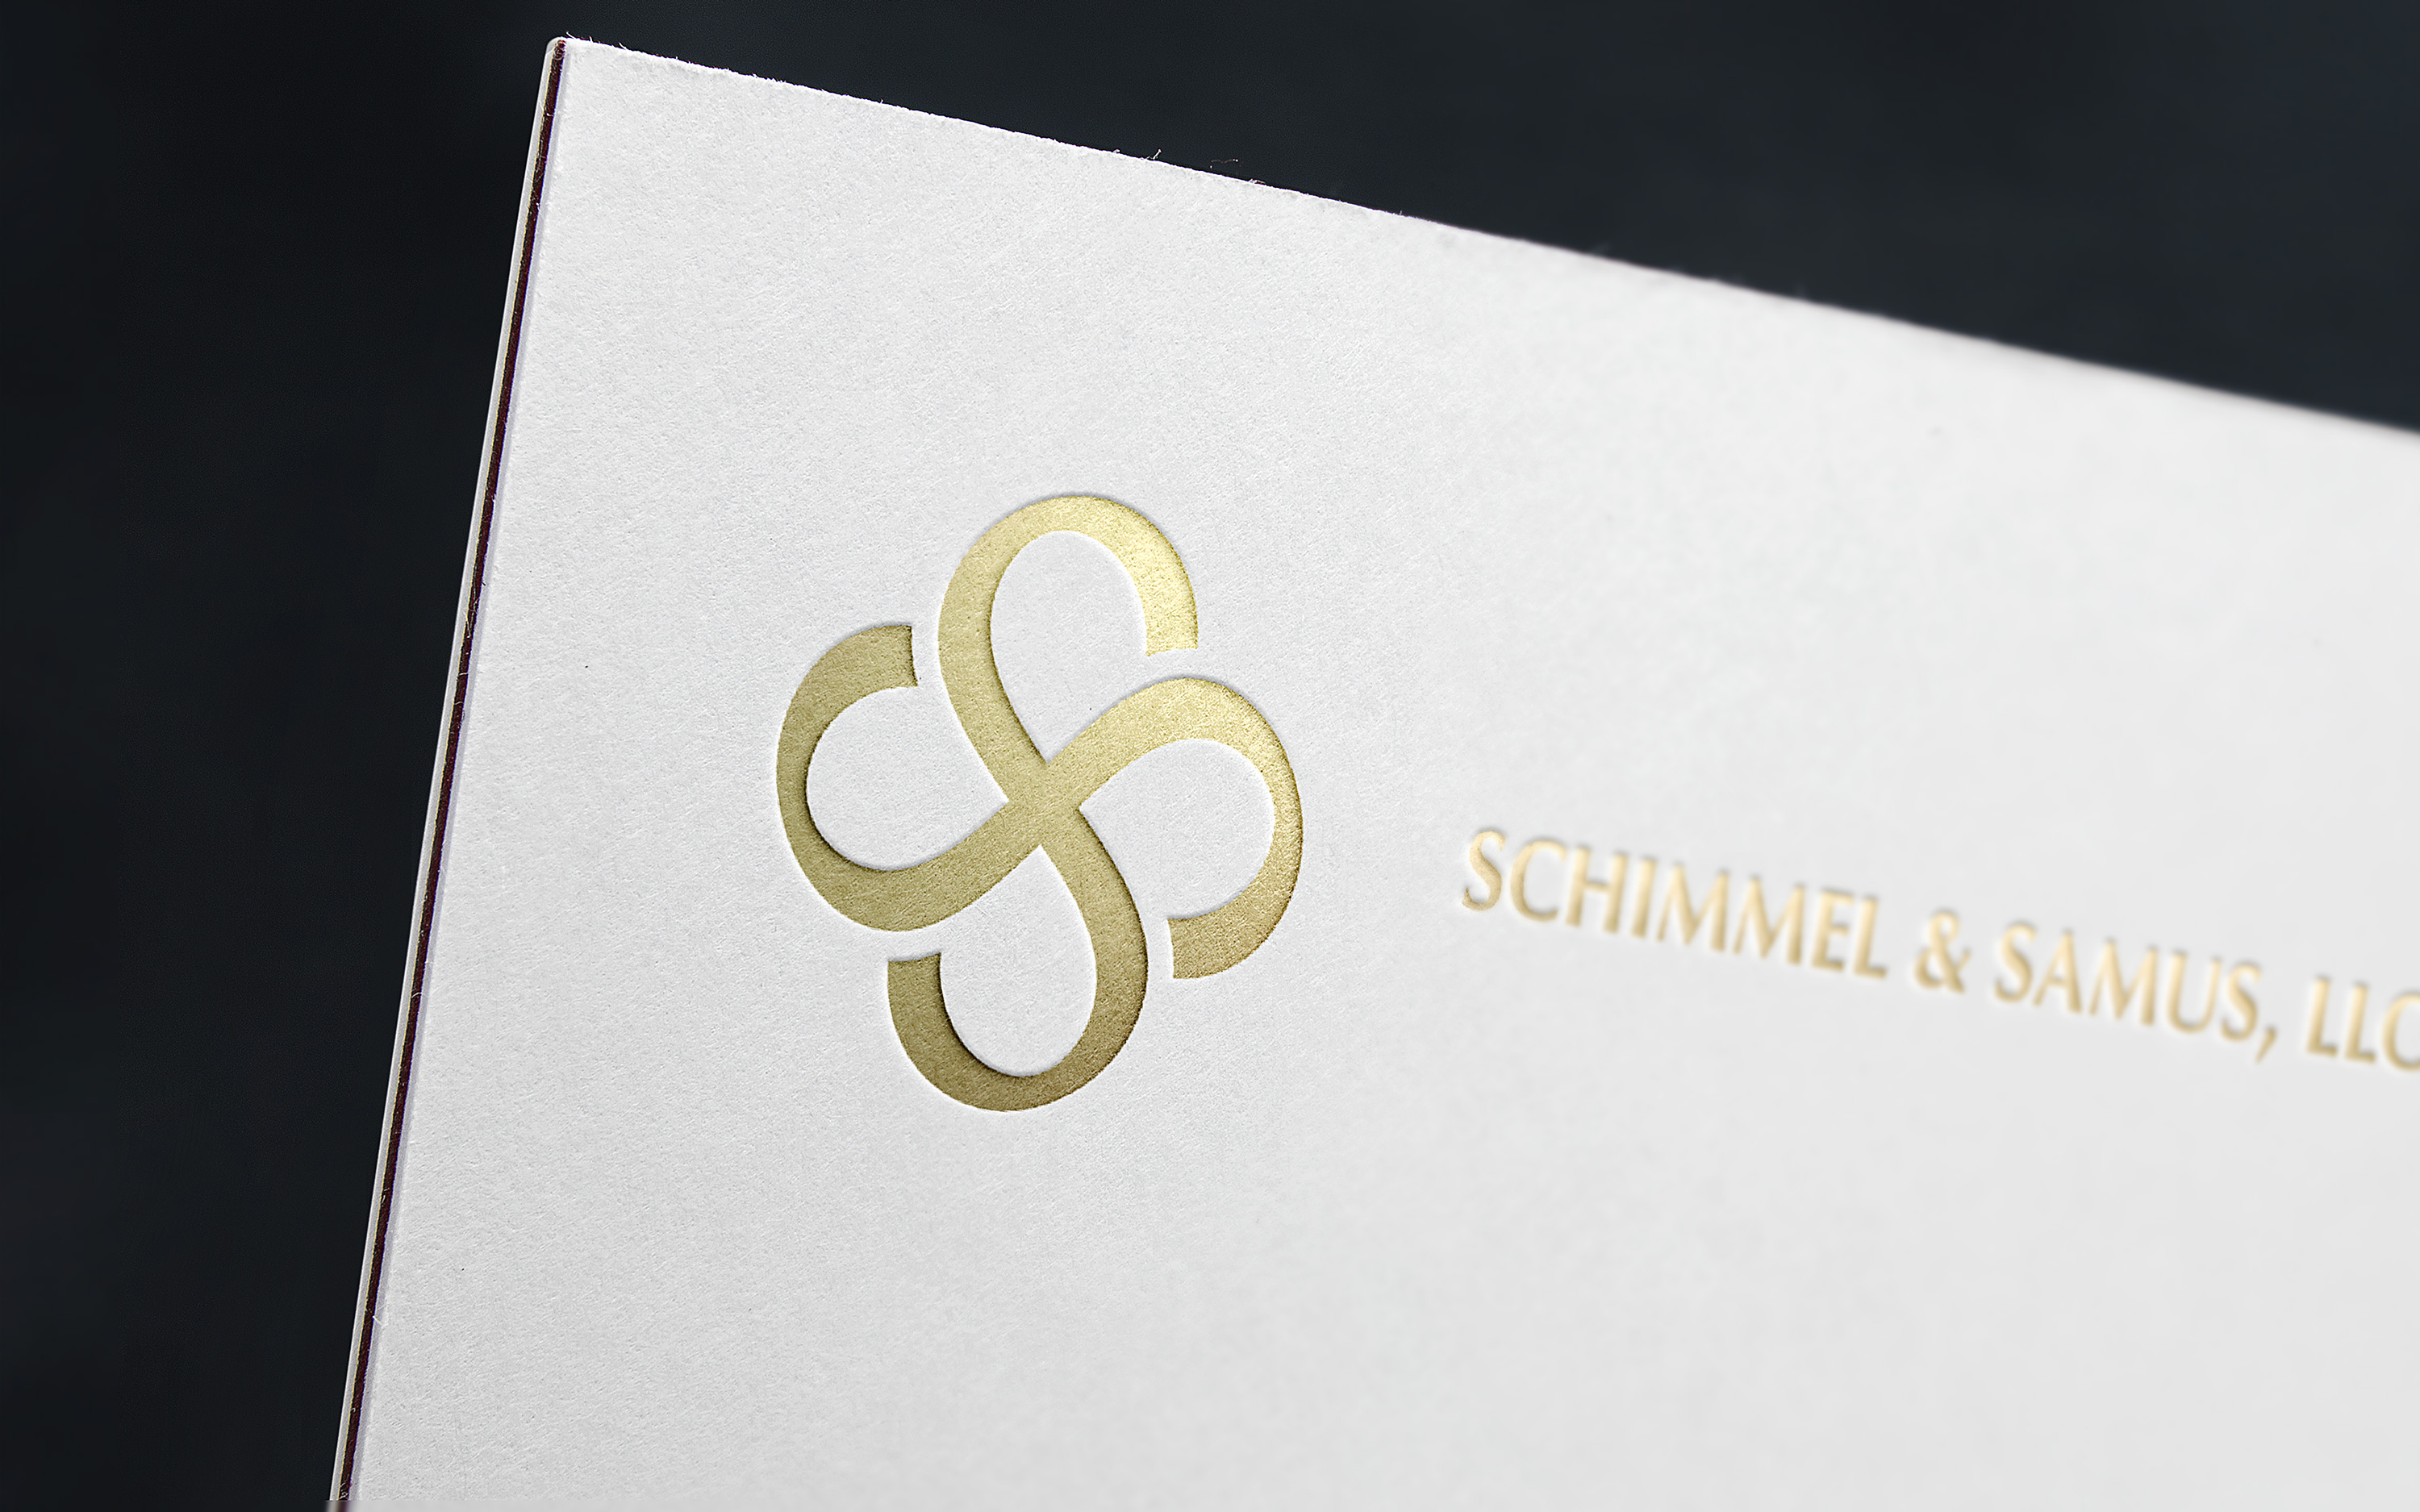 Schimmel & Samus. Logo for a law office